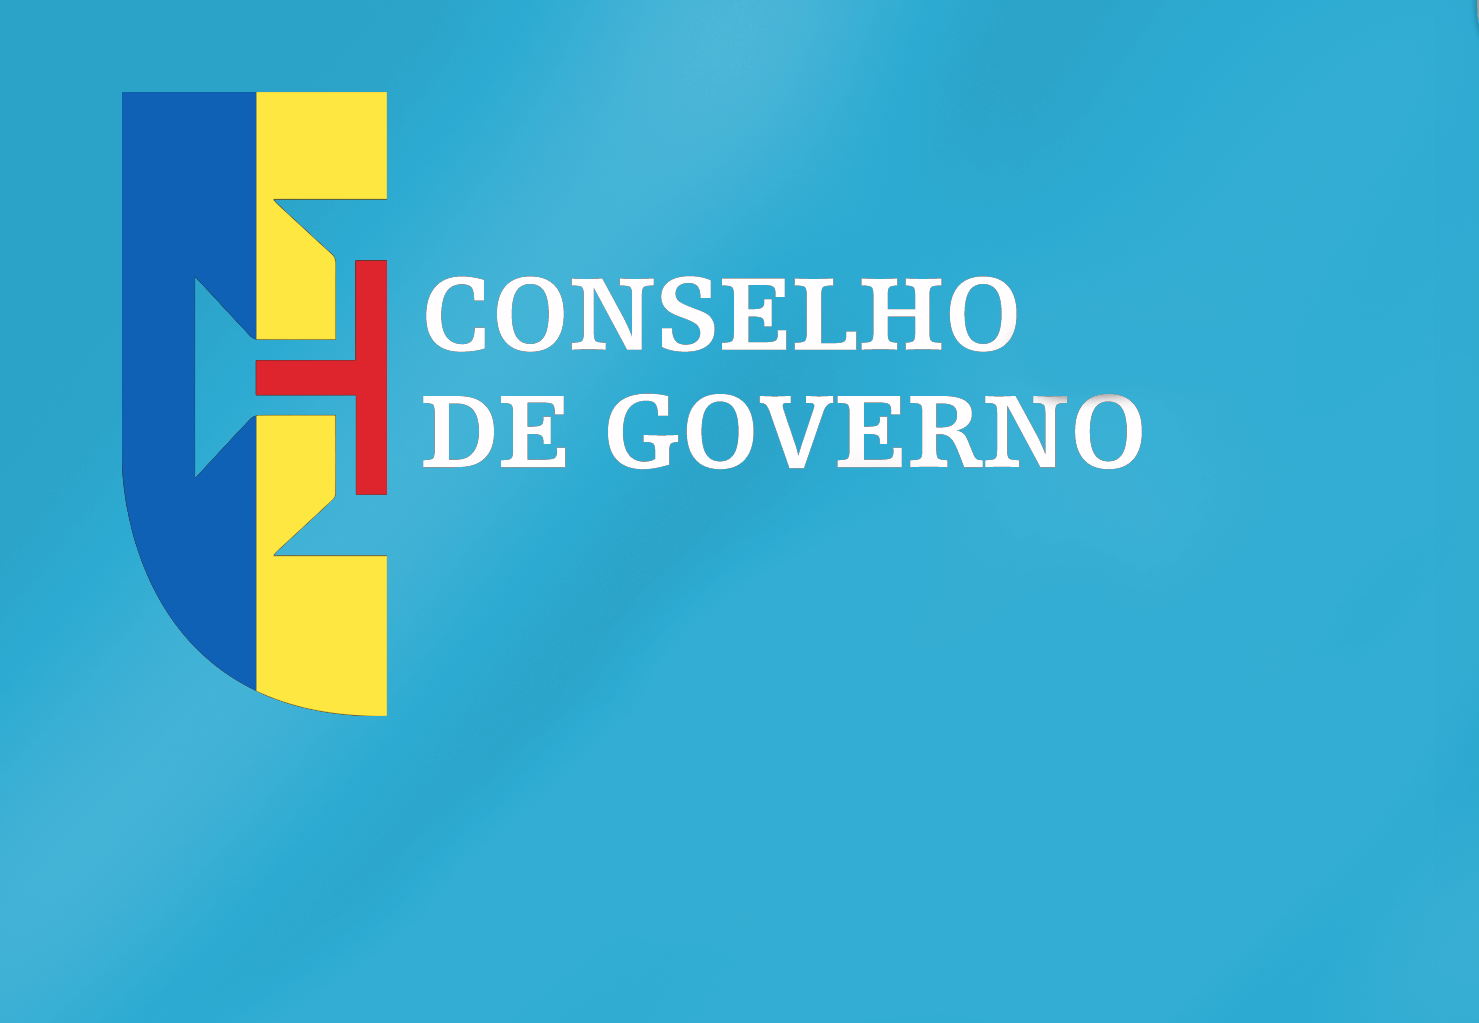 Conclusões Conselho de Governo - 07 de julho de 2022